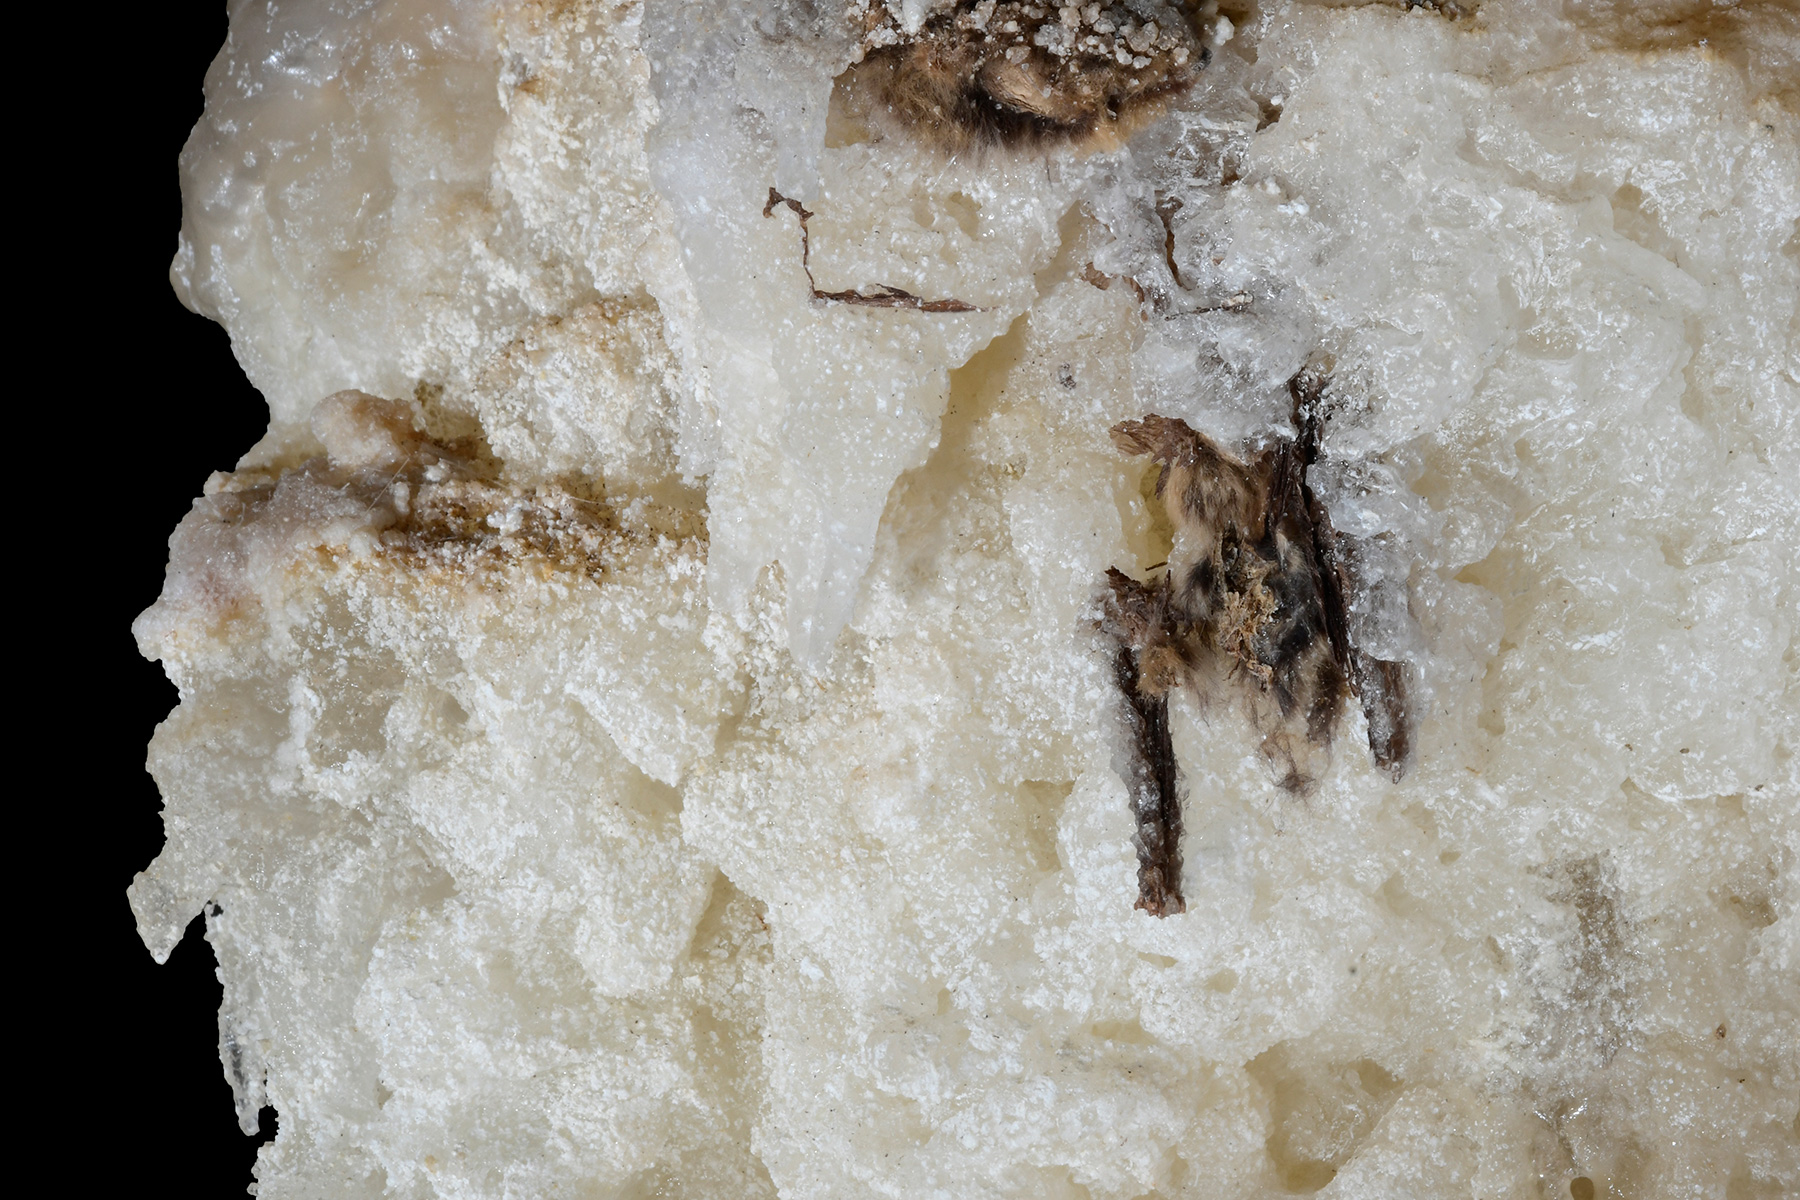 Cottonwood Cave Second Parallel (USA - Nouveau Mexique) - Chauve-souris prise dans une stalagmite d'epsomite